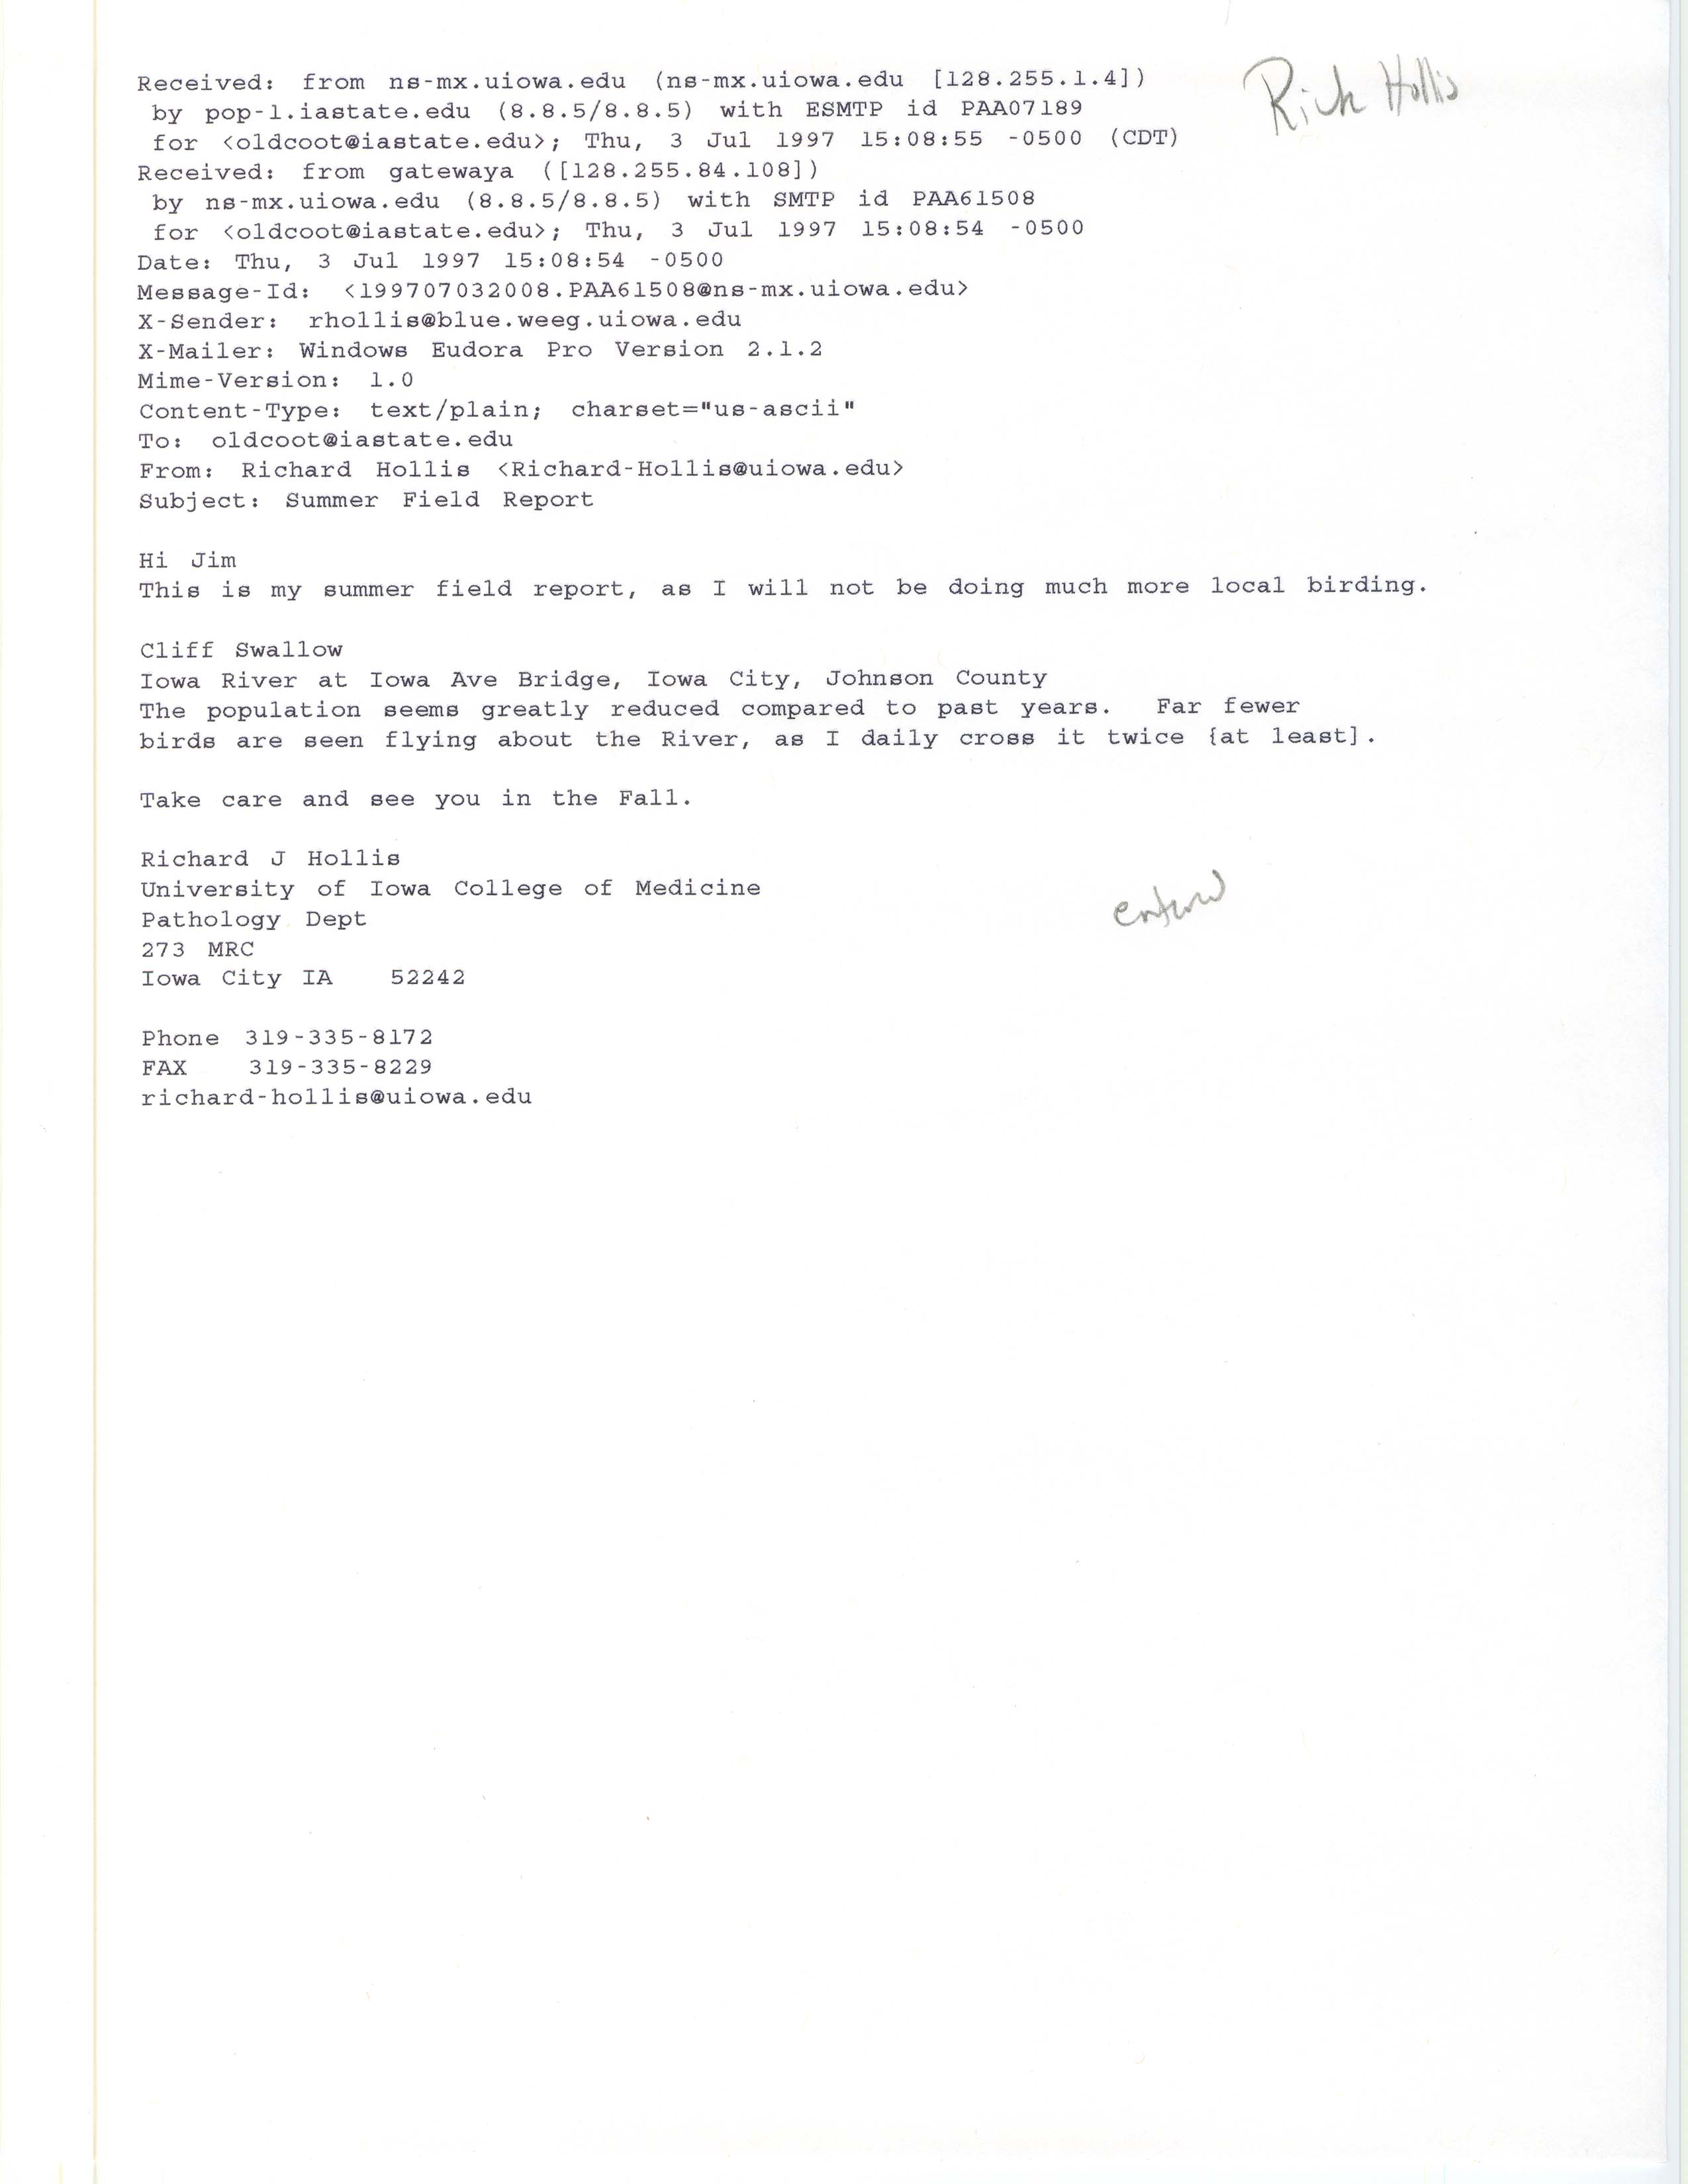 Richard Jule Hollis email to James J. Dinsmore regarding a Cliff Swallow sighting, July 3, 1997.